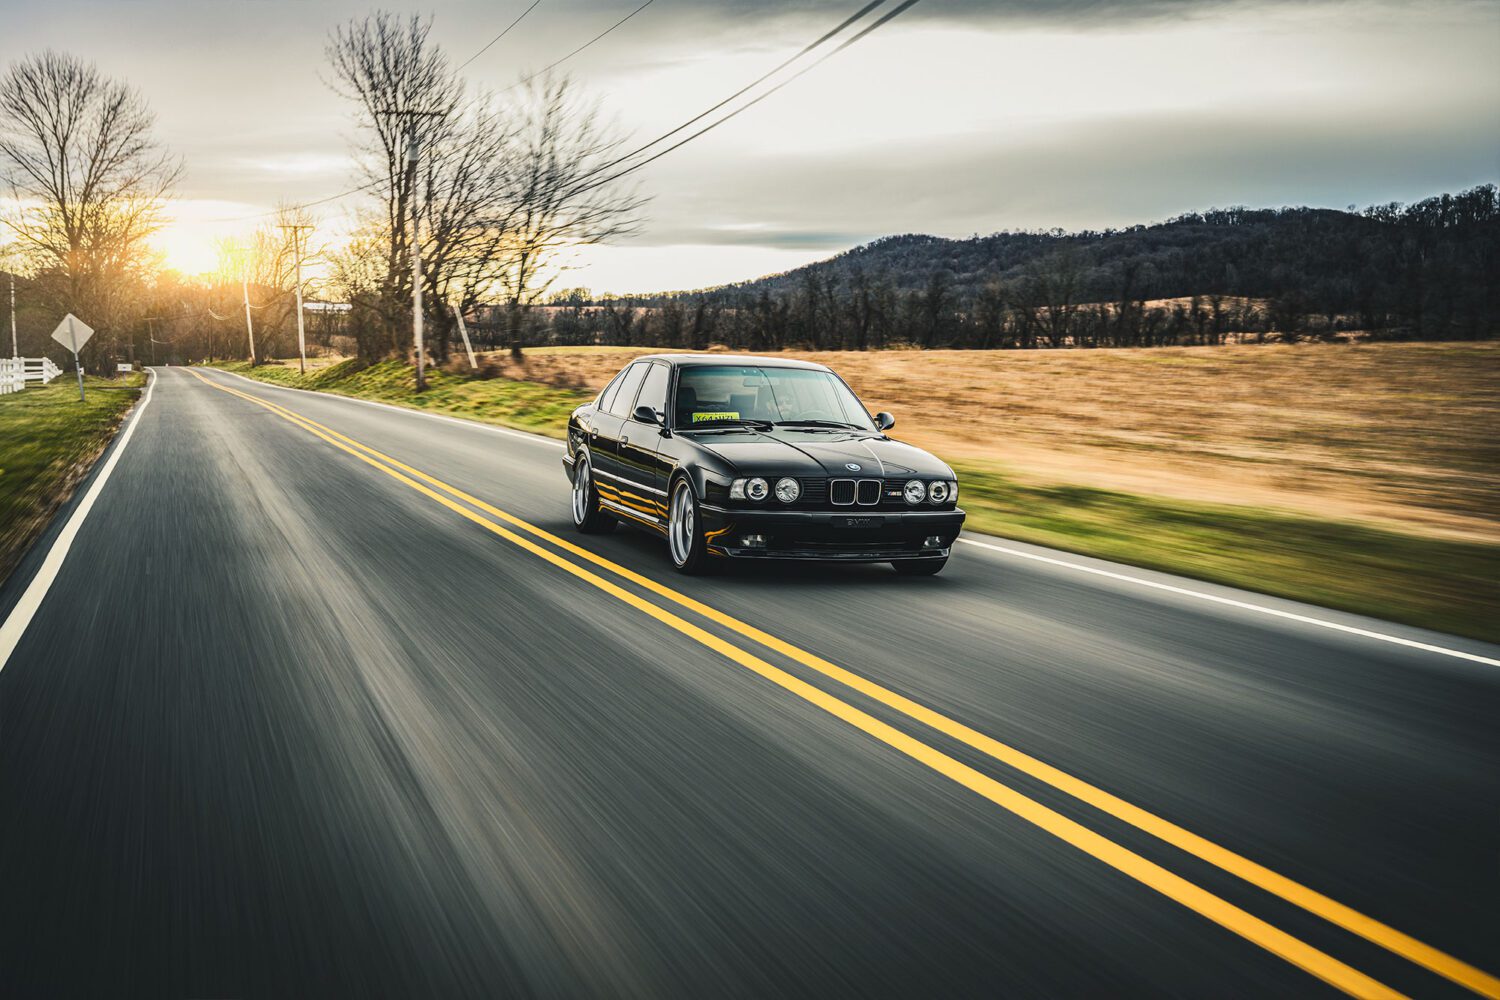 The BMW E34 M5 shoot